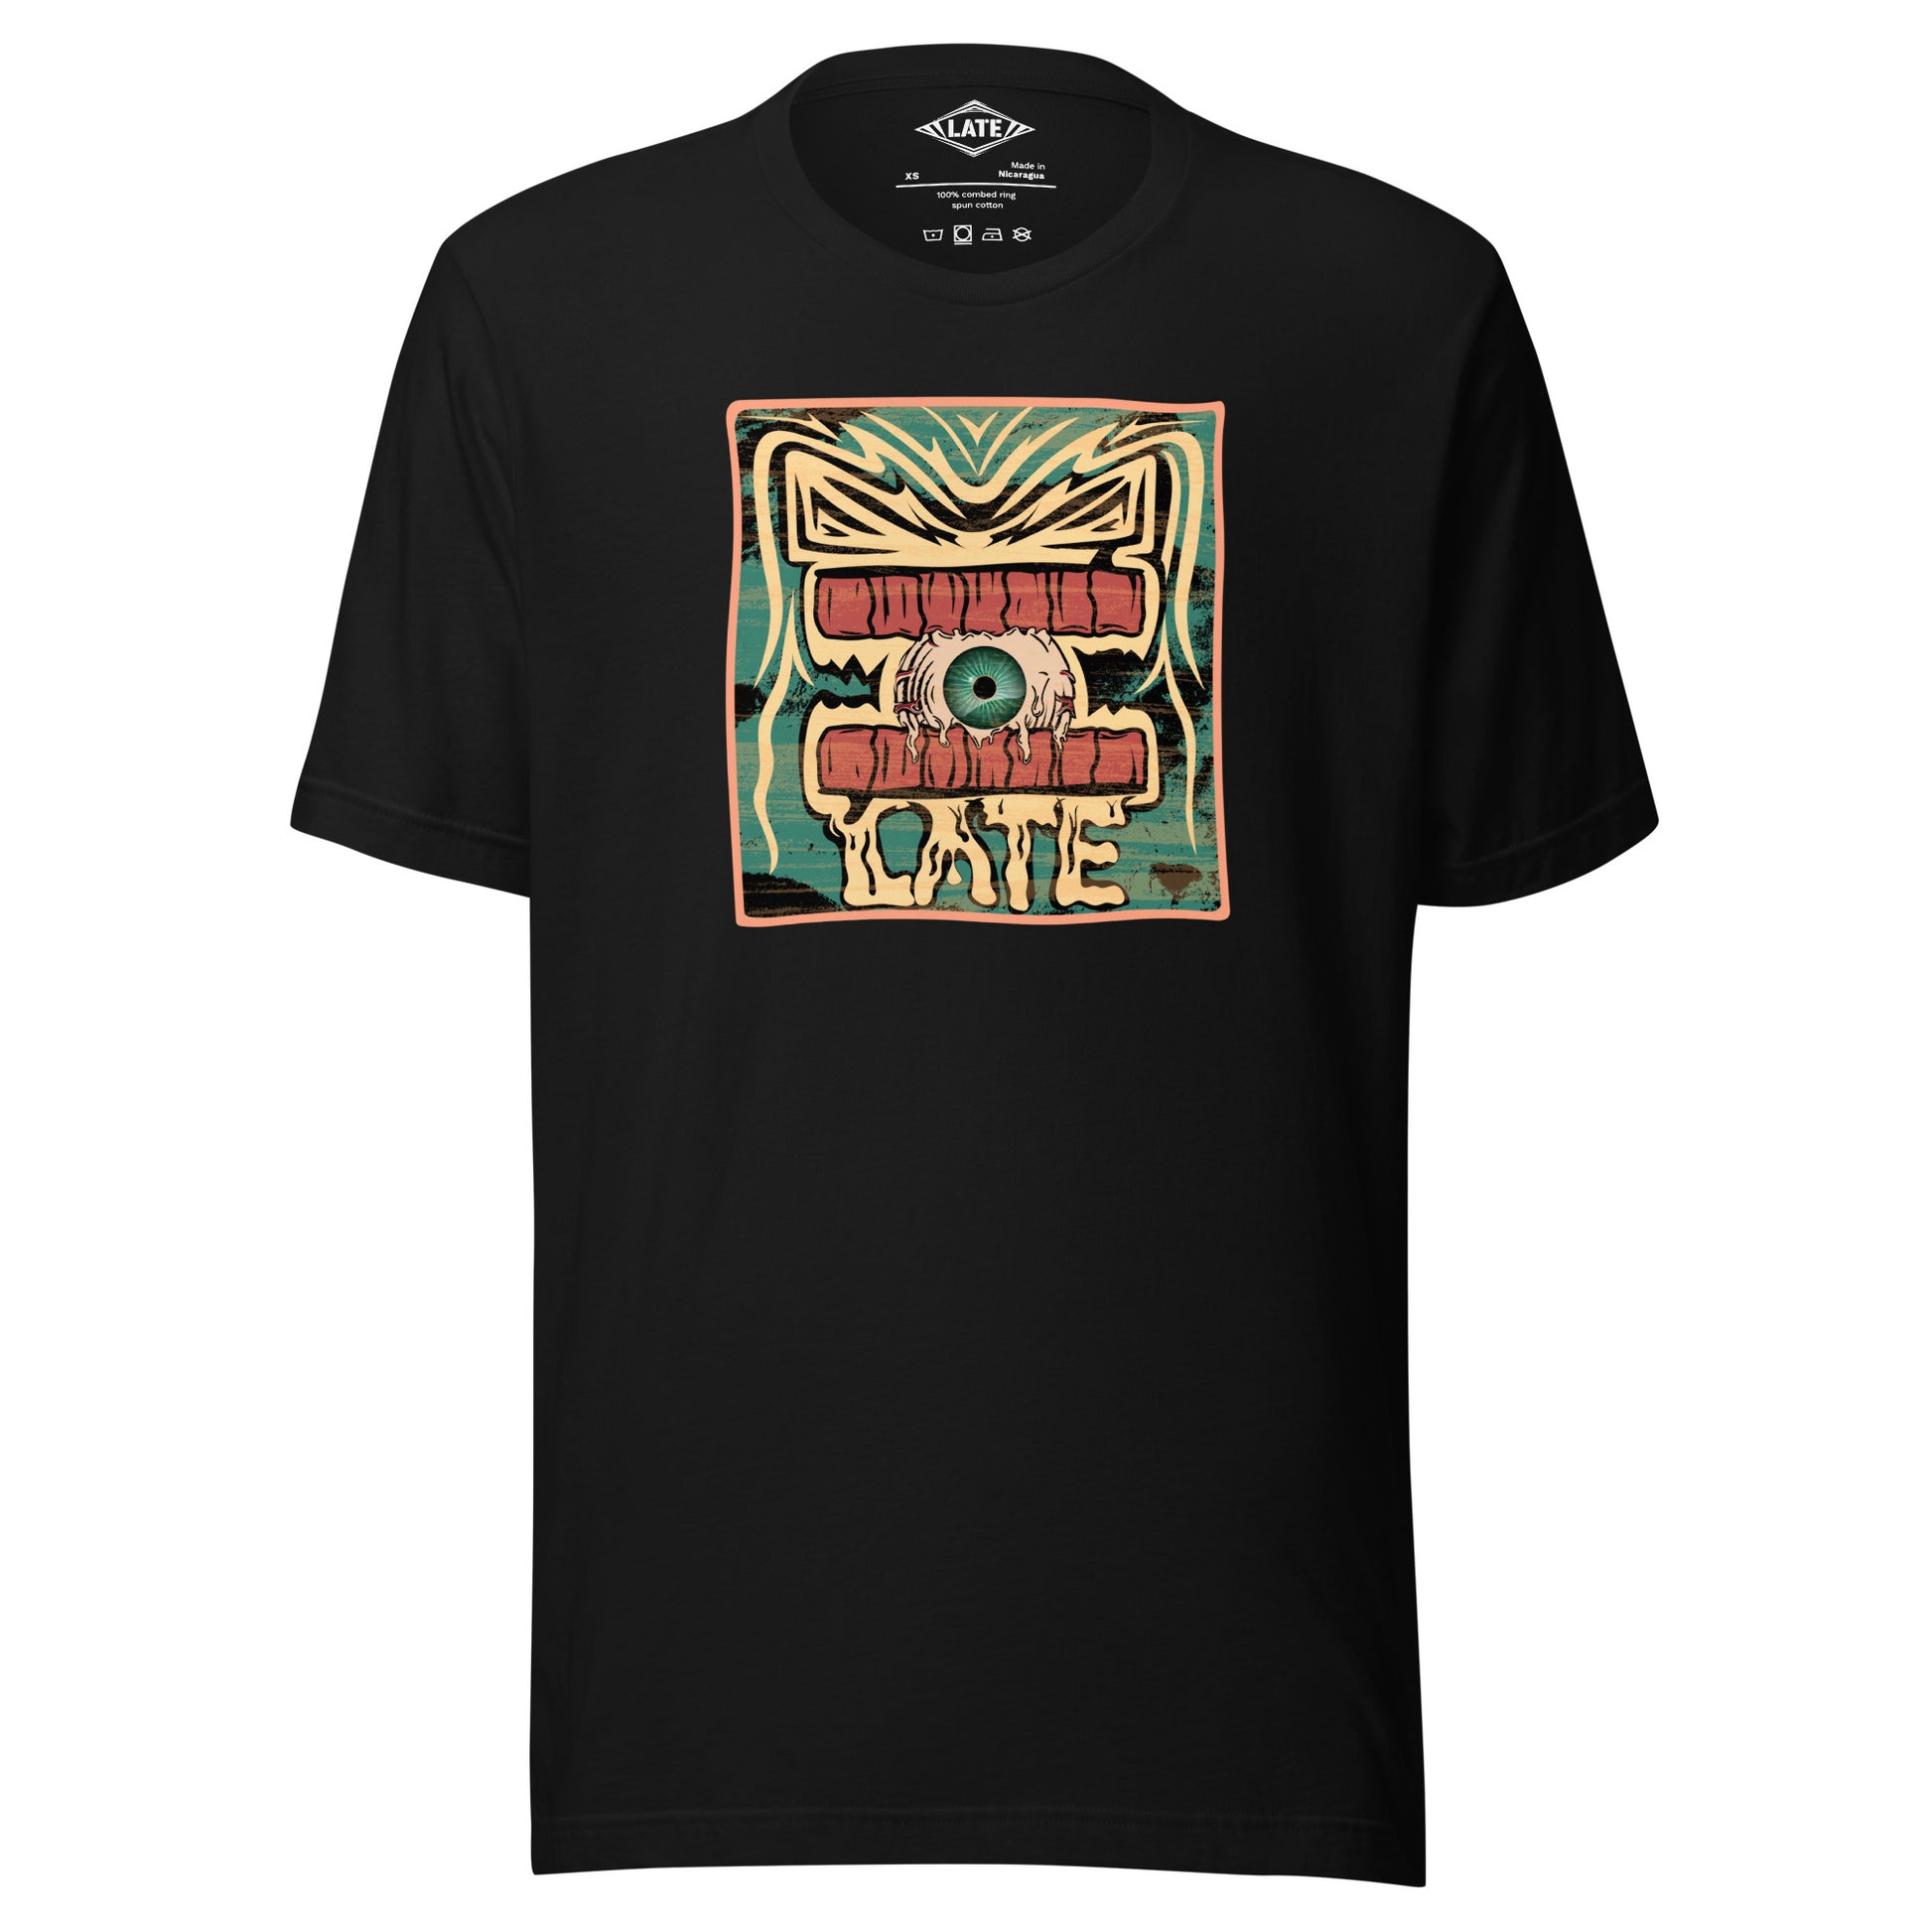 T-shirt rétro skateboarding, design couleur délavée, années 70,80, original dent et oeil skate, tee-shirt unisexe  noir